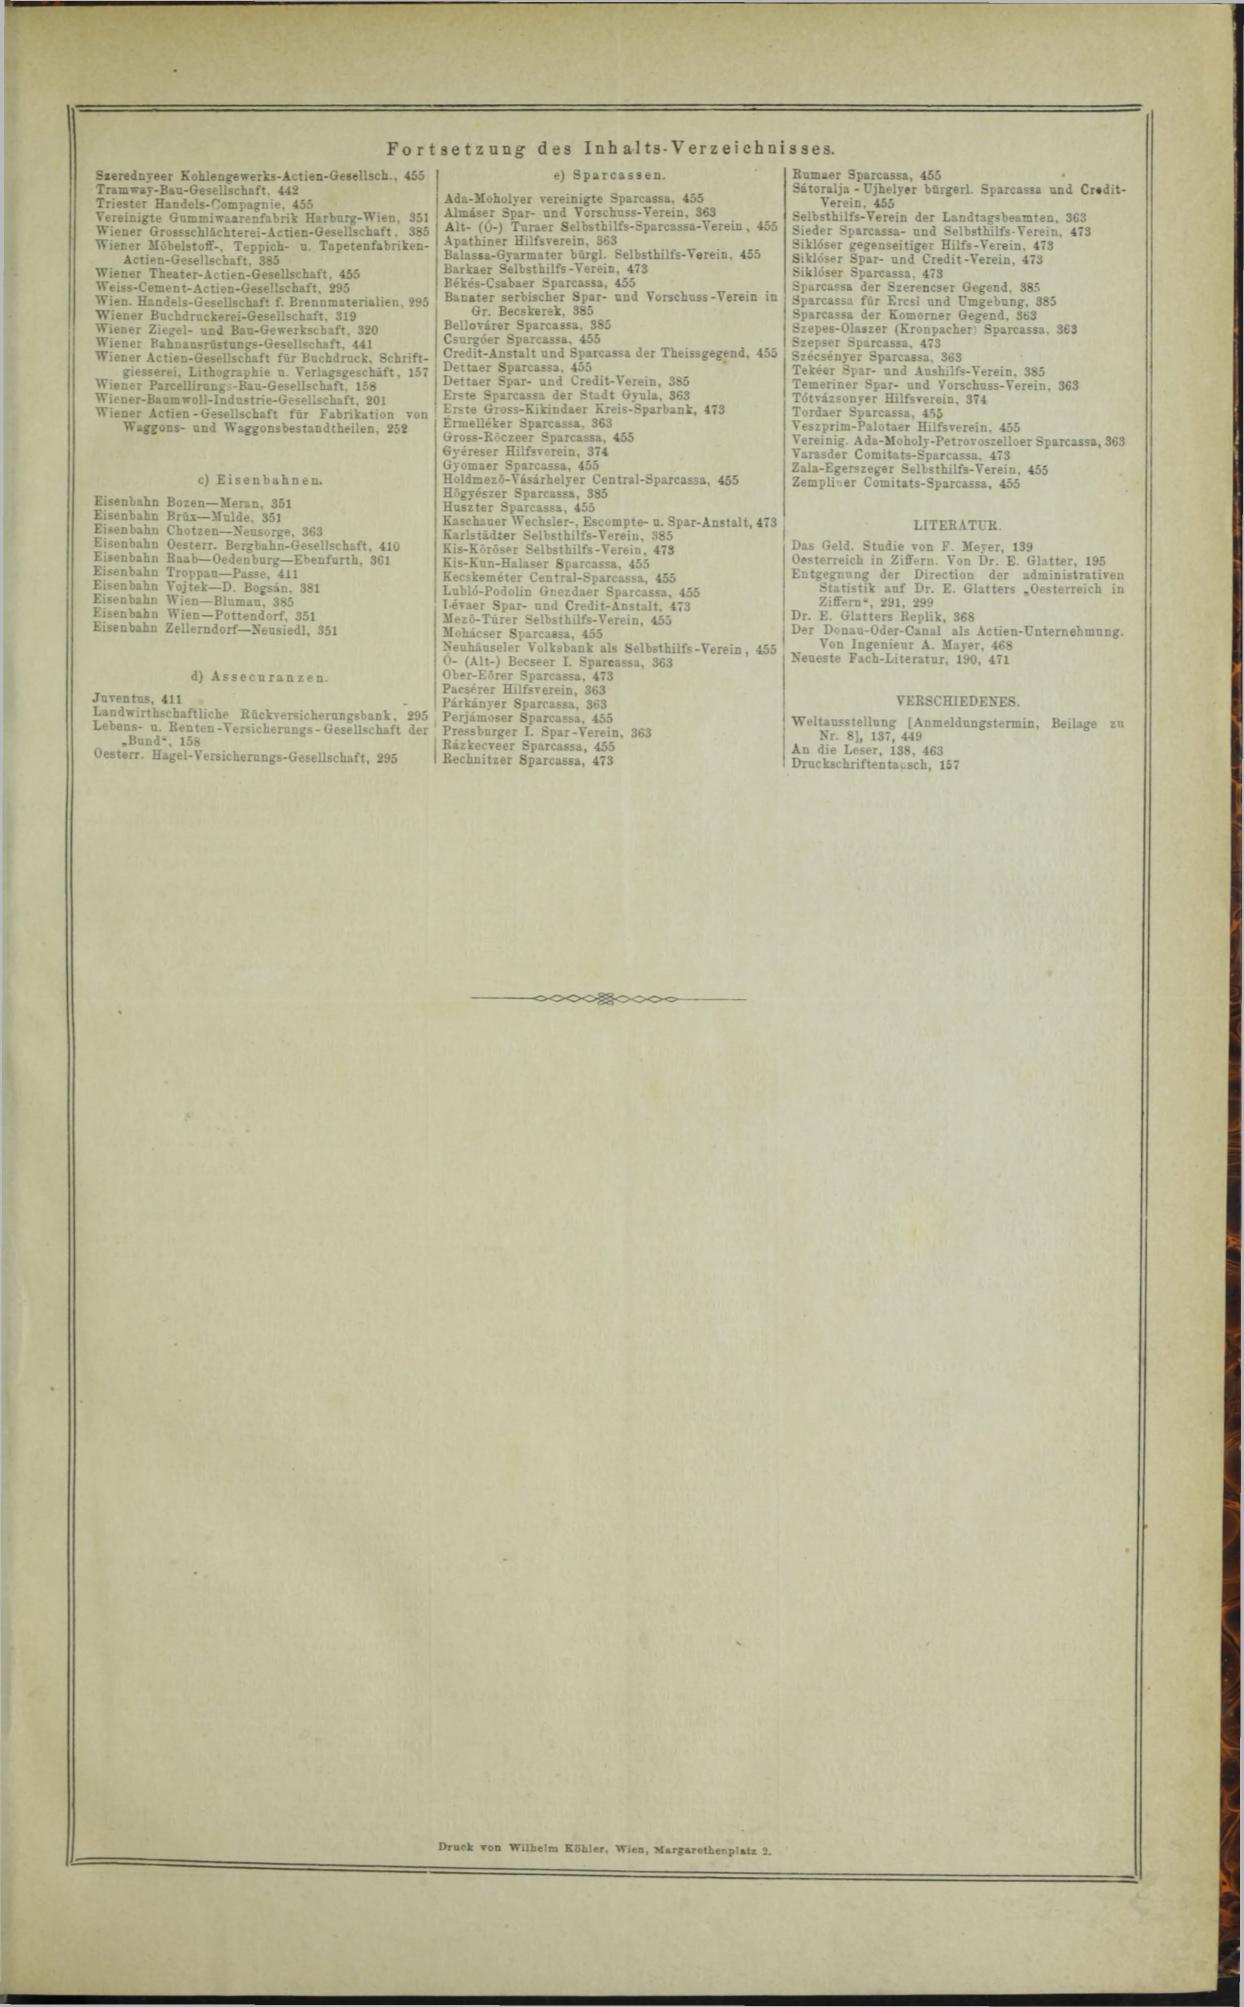 Der Tresor 25.09.1872 - Page 14